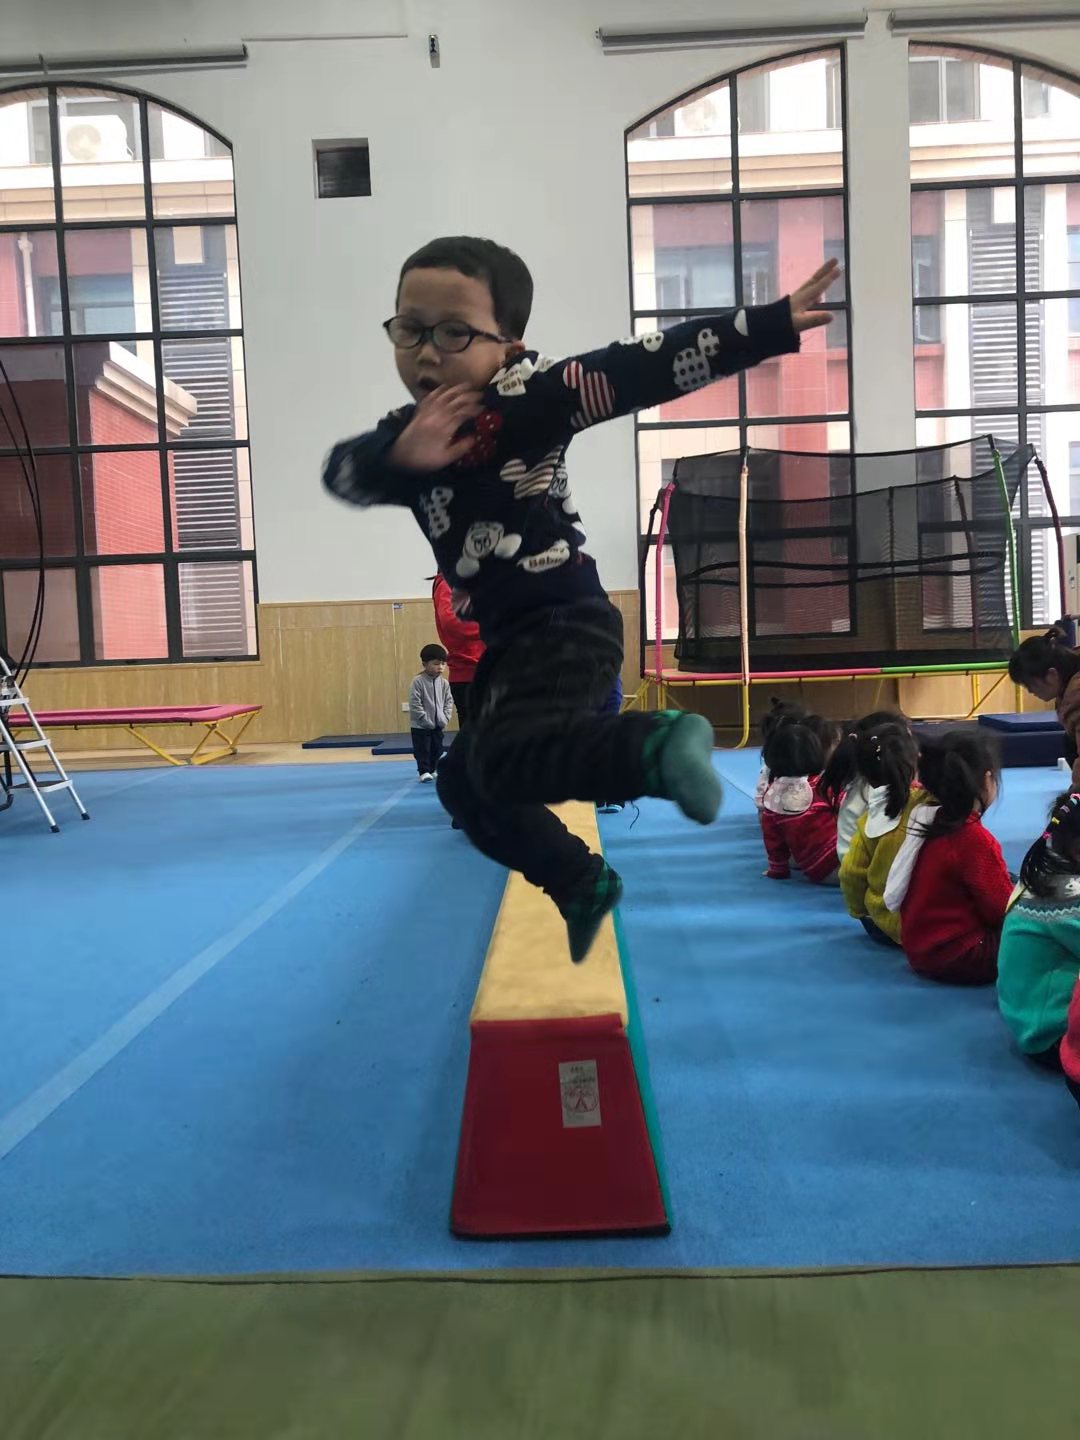 长沙市体操学校定期举行快乐体操体验活动，在娱乐中掌握体操技能的模式，让孩子们像在游乐场一样，潜移默化中接受体操教学。 陈怡 供图